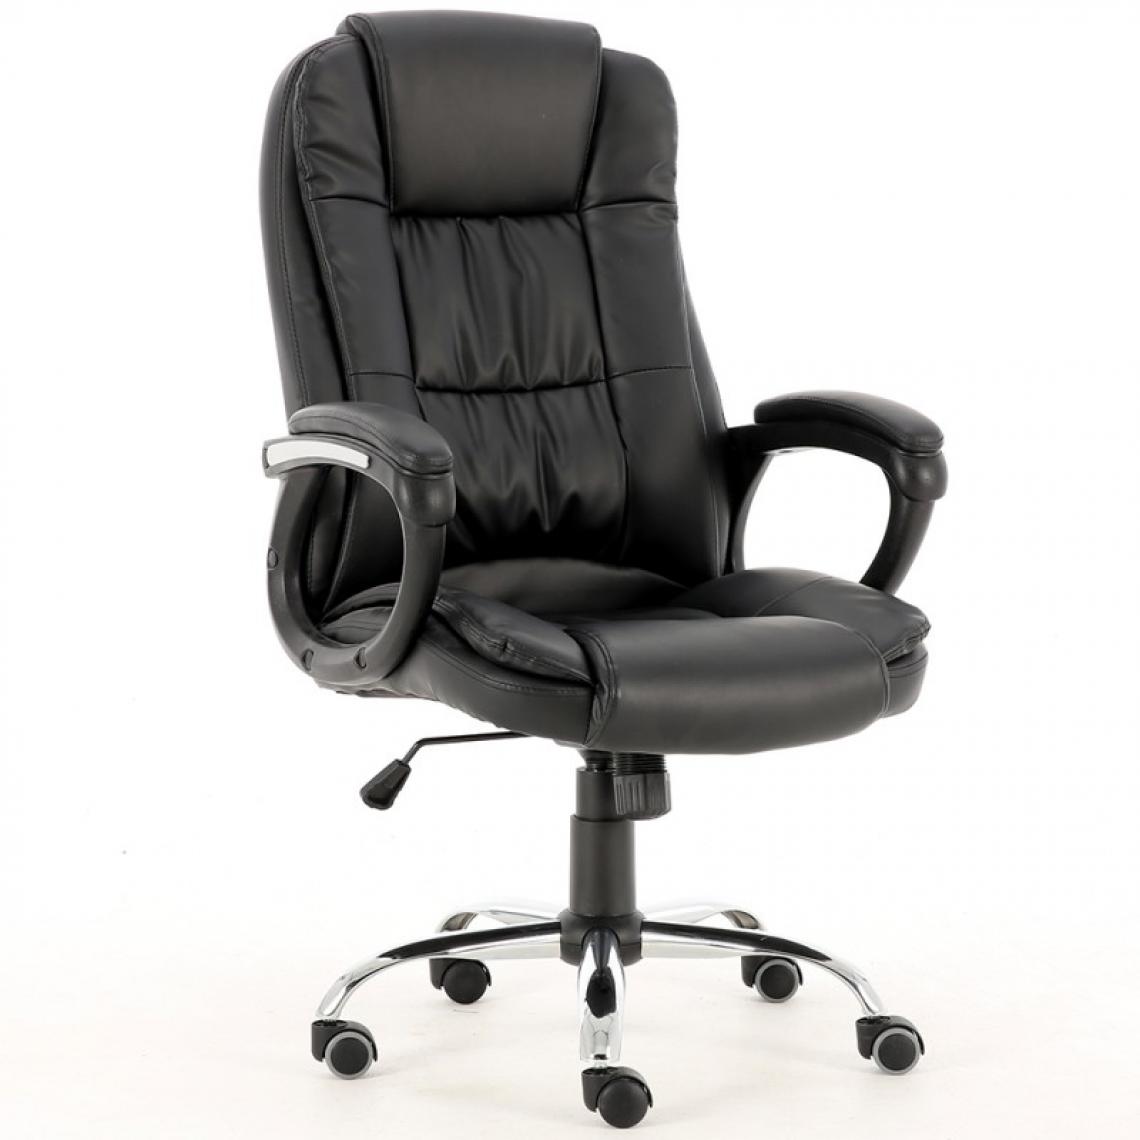 Hucoco - KANKYO - Fauteuil de bureau en simili-cuir- Hauteur ajustable - Avec accoudoirs - Chaise de bureau pivotante - Noir - Chaises